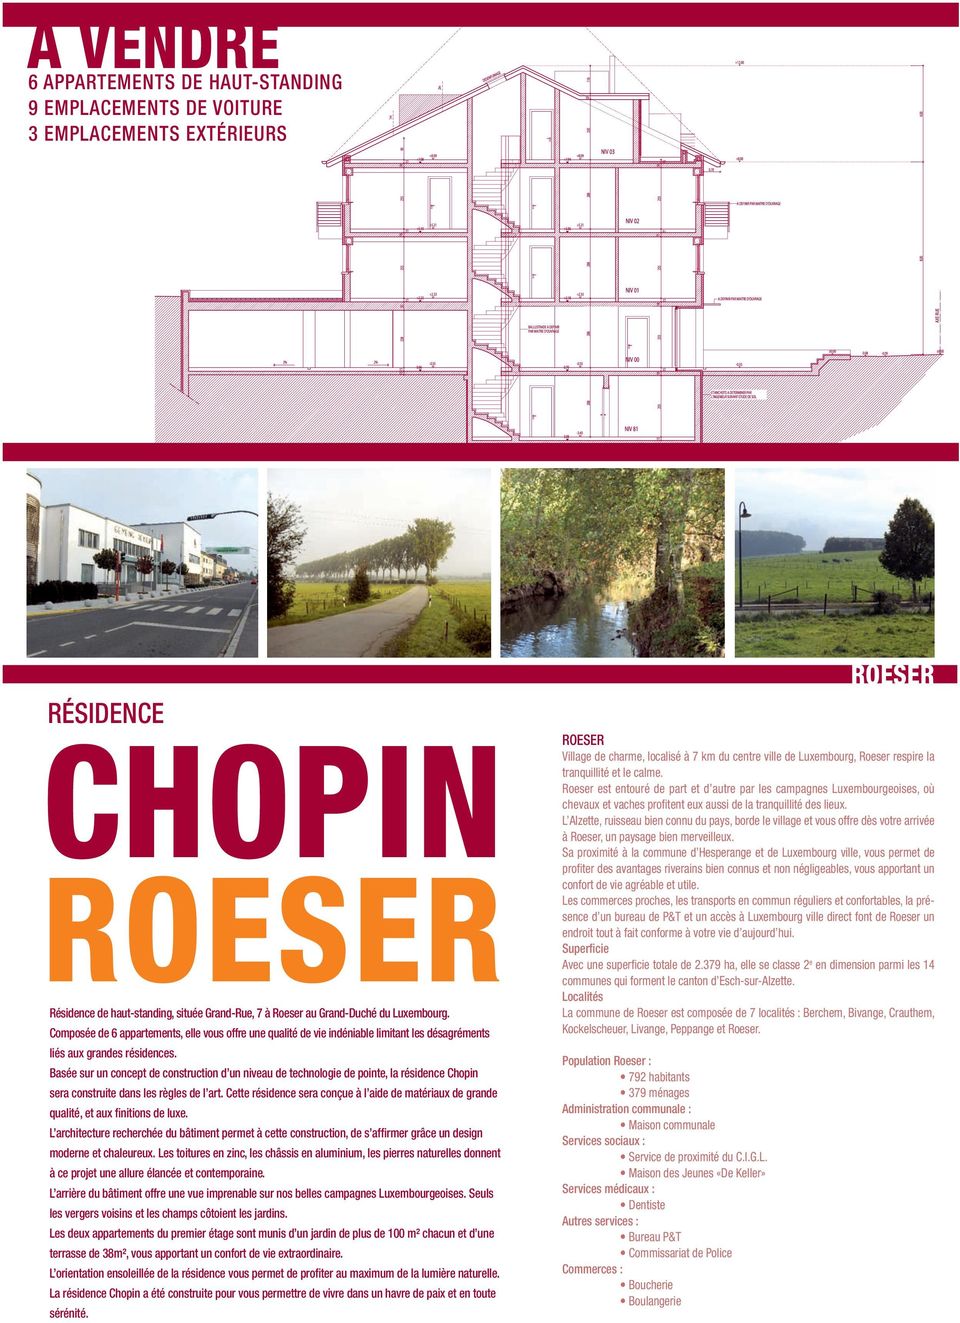 Basée sur un concept de construction d un niveau de technologie de pointe, la résidence Chopin sera construite dans les règles de l art.